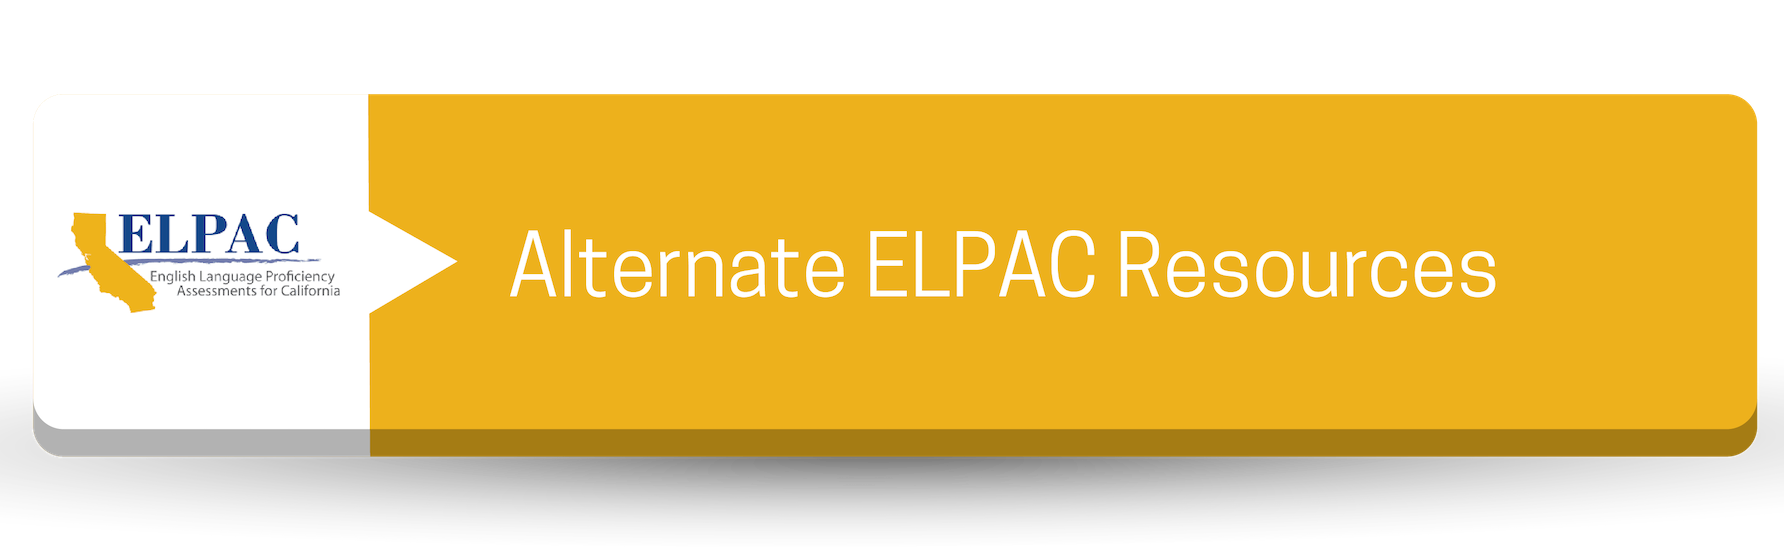 Alternate ELPAC Resources Button